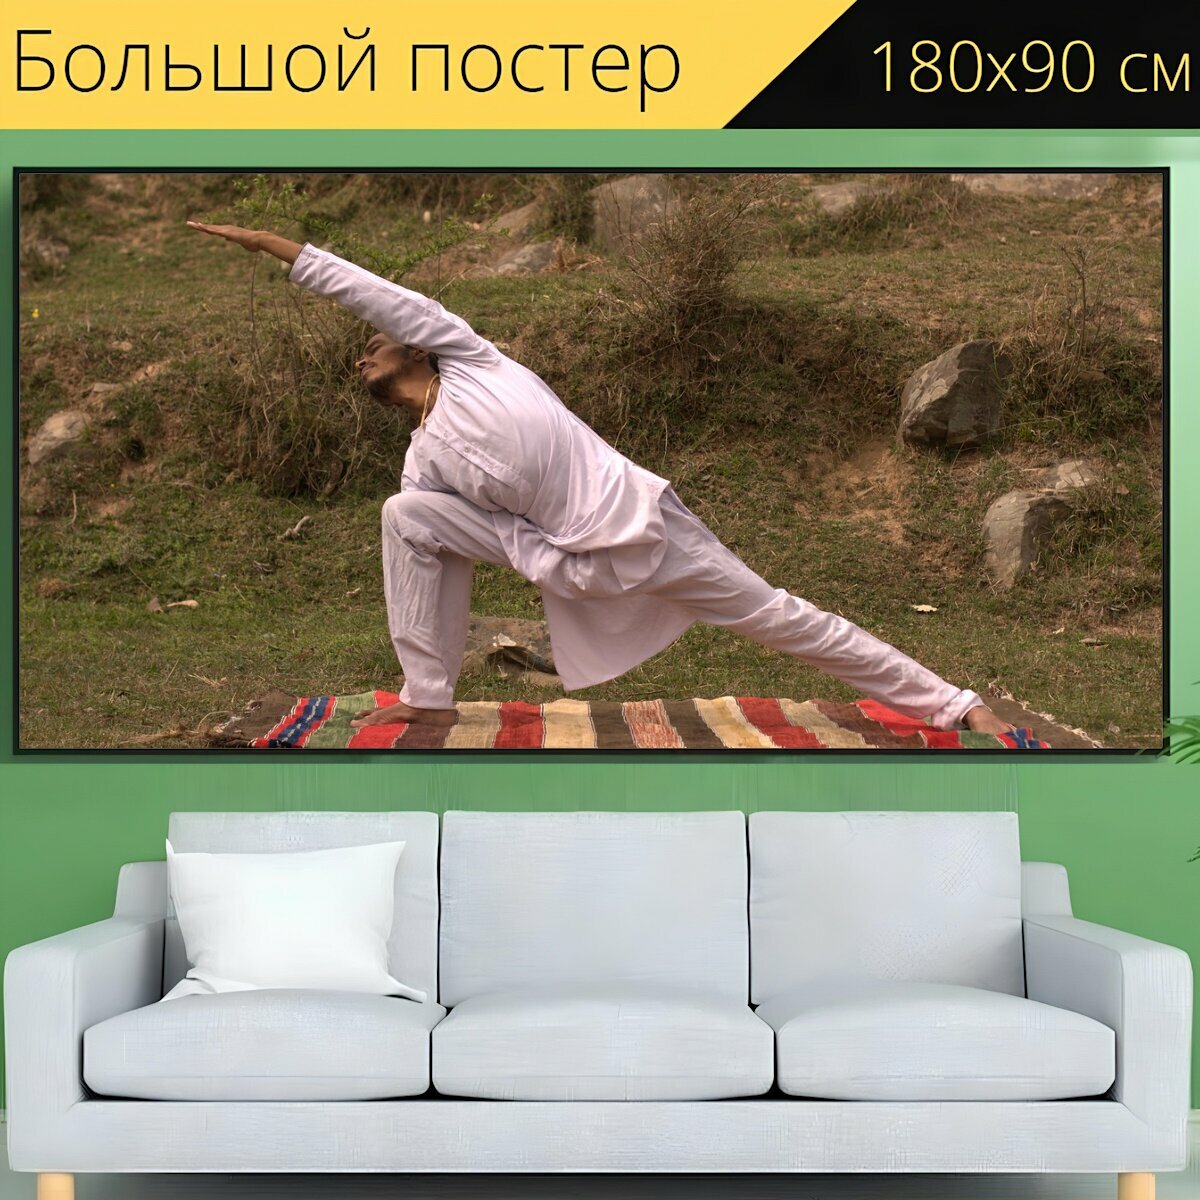 Большой постер "Йога, йог, упражнение" 180 x 90 см. для интерьера